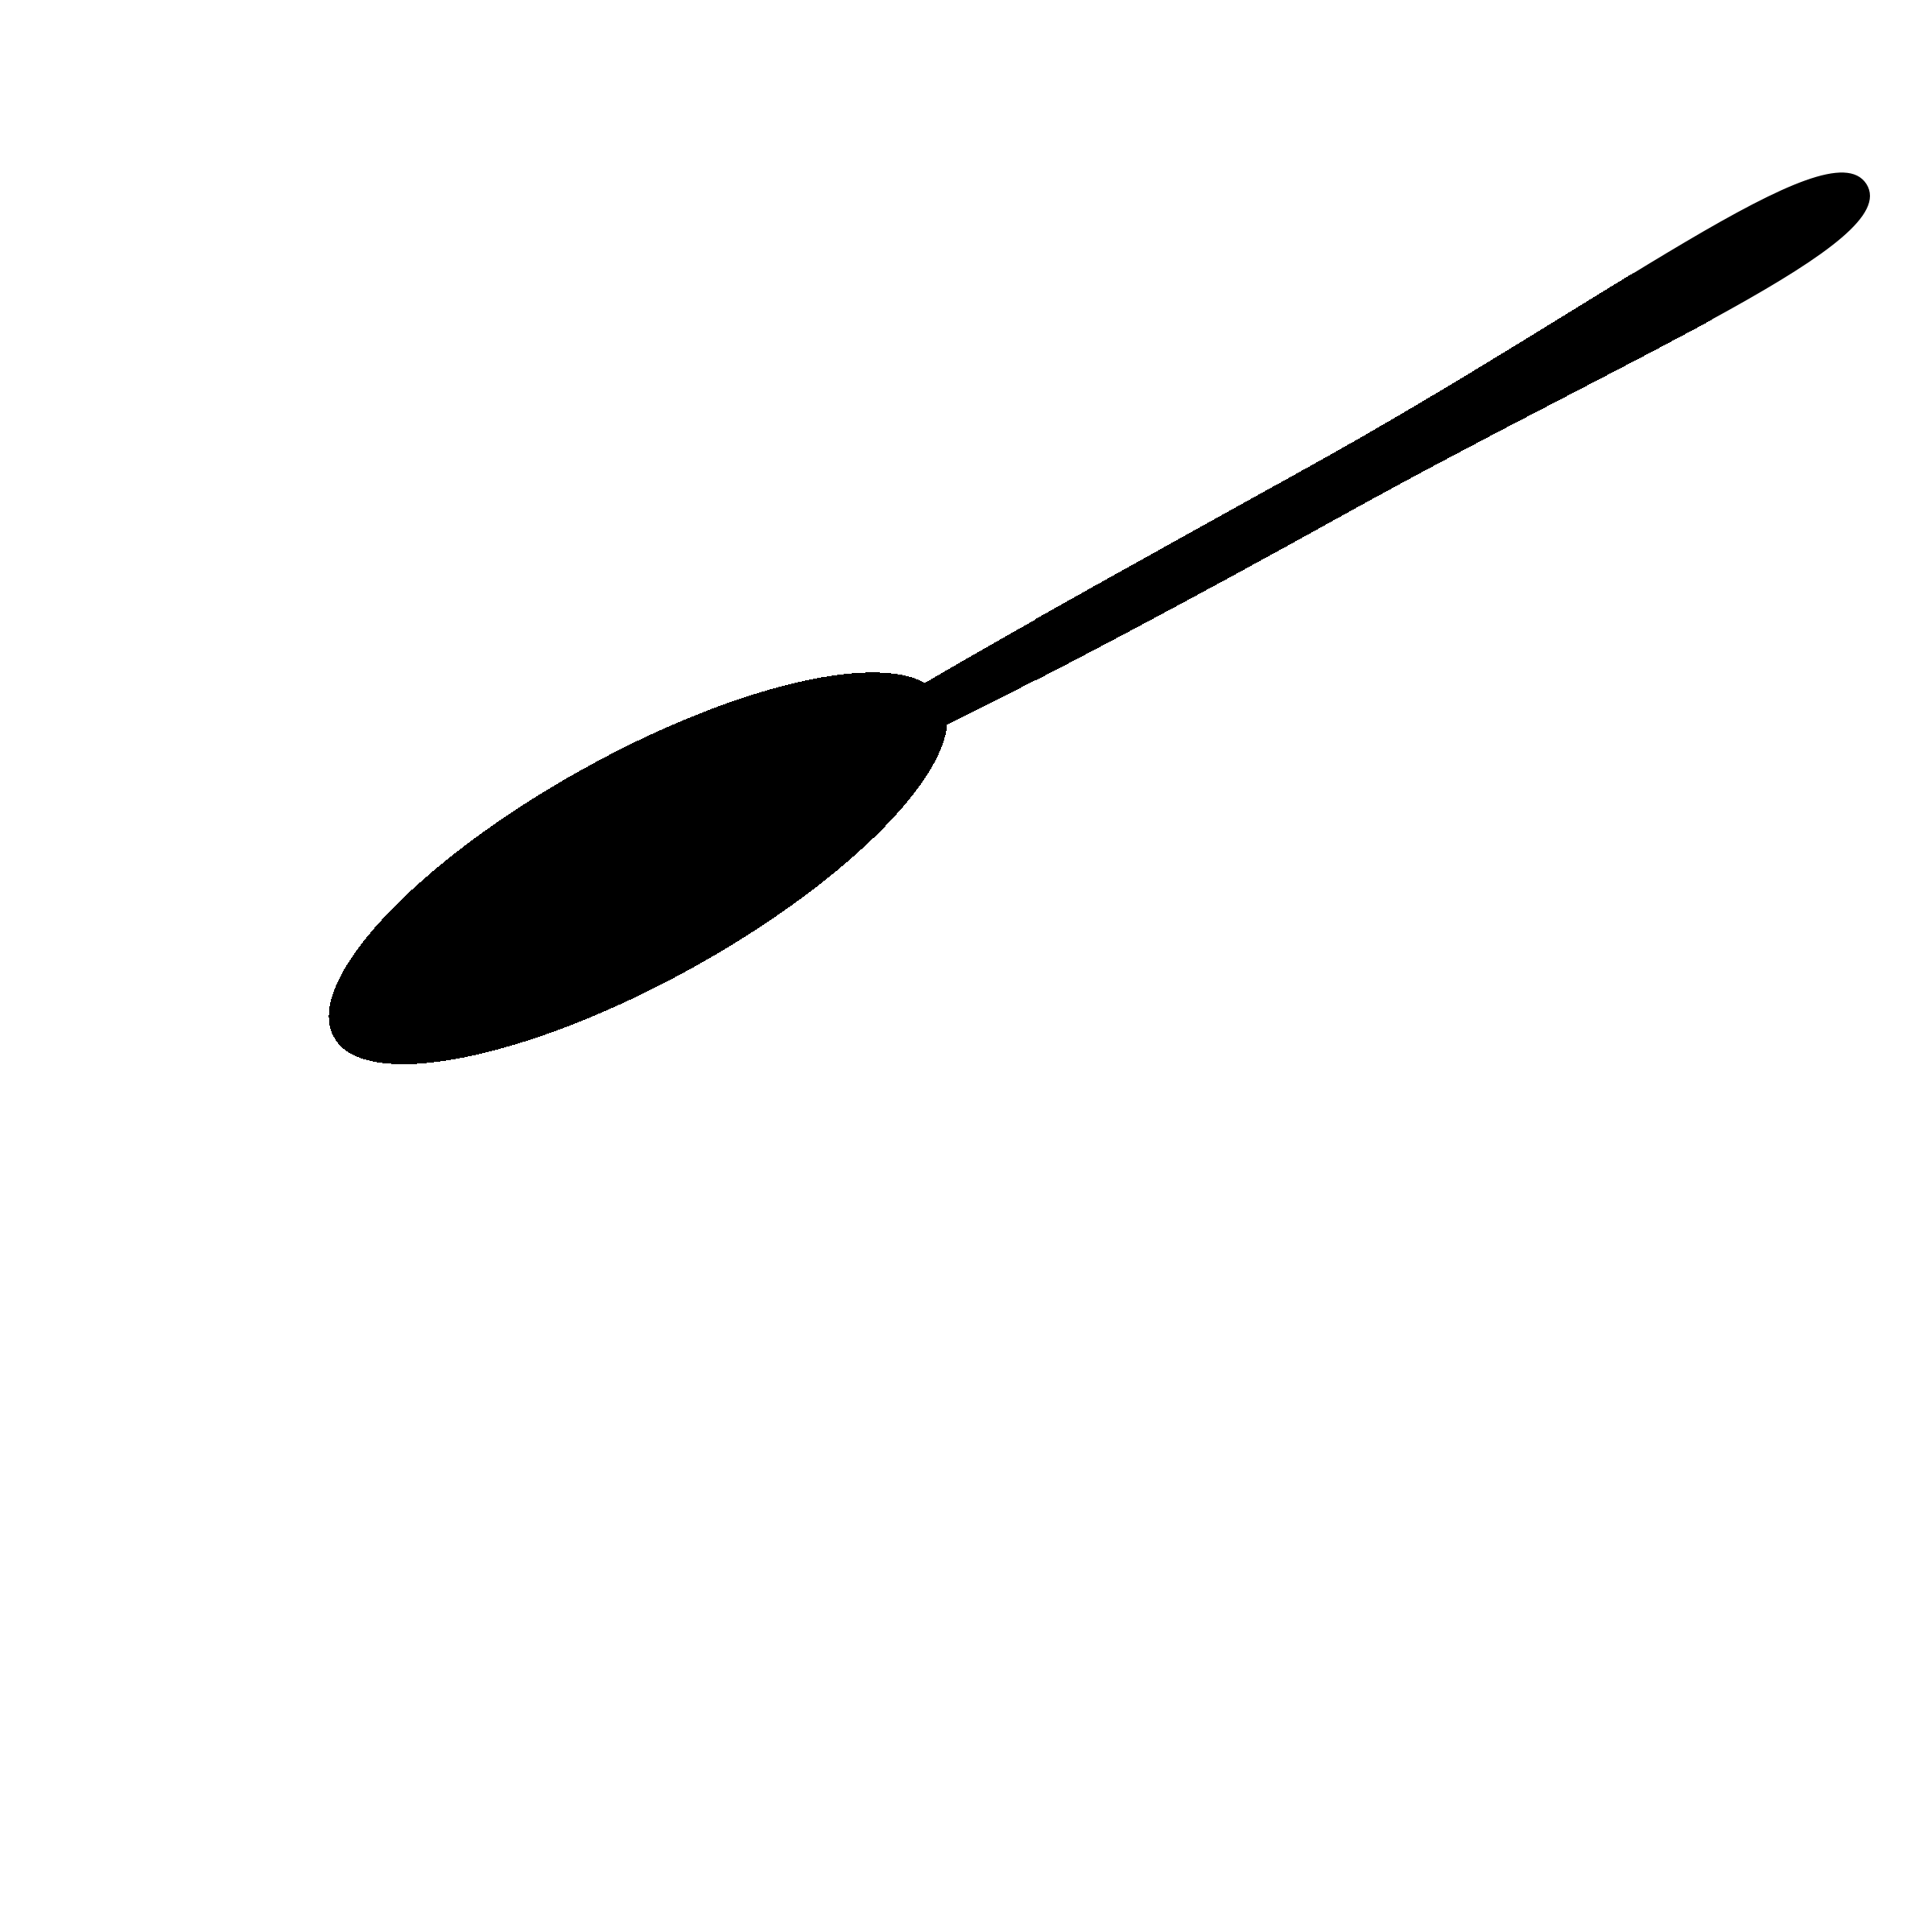 Kose Logo - Kepche Mesut Kose Logo PNG Transparent & SVG Vector